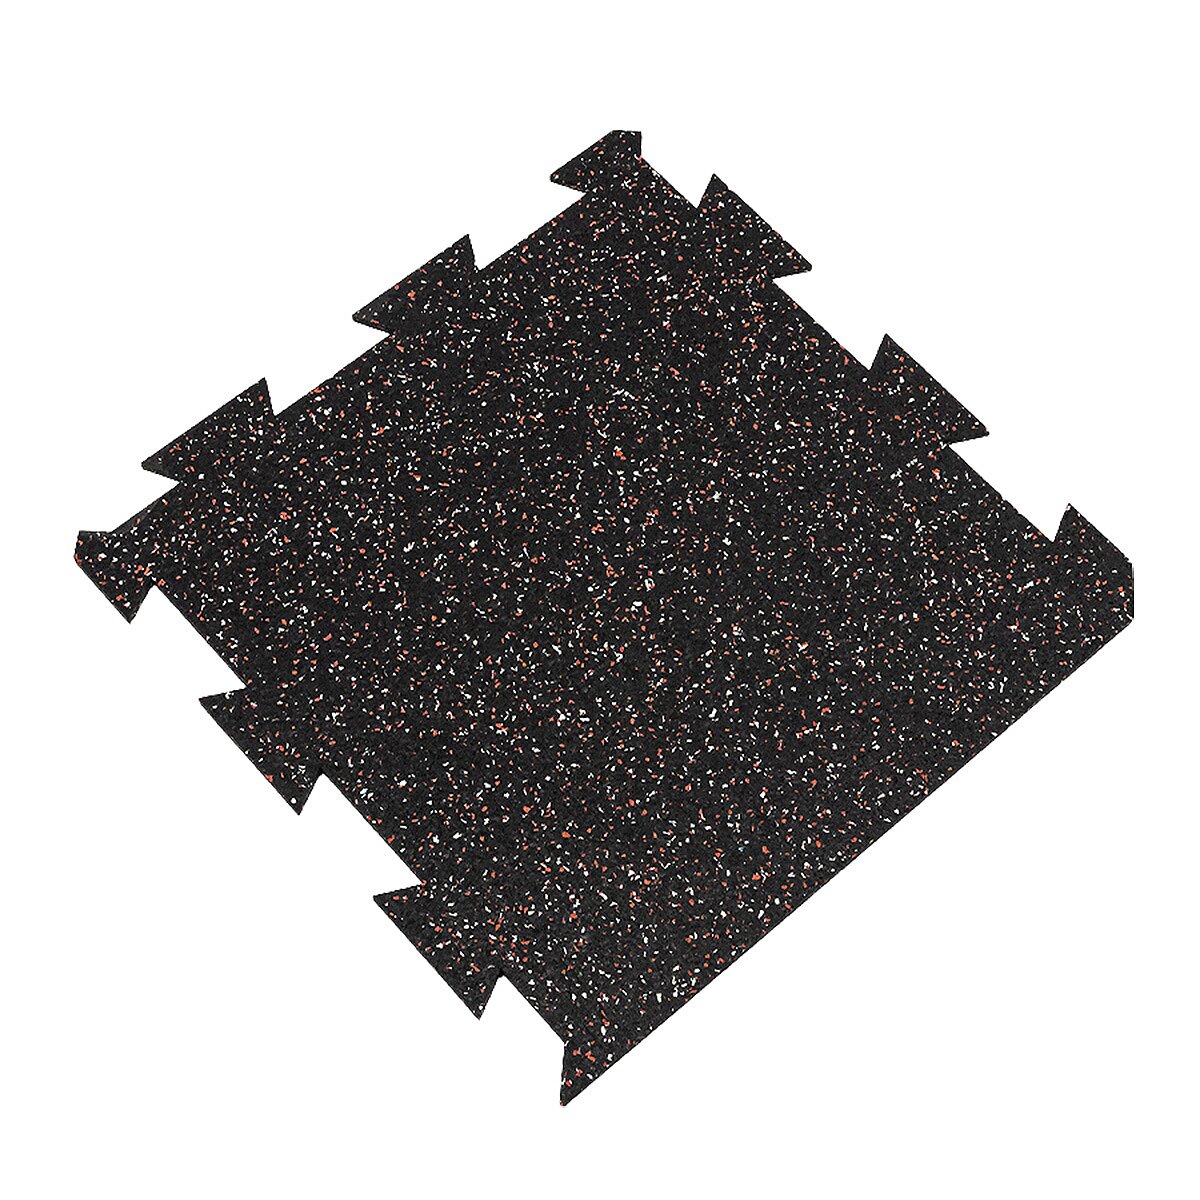 Čierno-bielo-červená gumová modulová puzzle dlažba (okraj) FLOMA FitFlo SF1050 - dĺžka 50 cm, šírka 50 cm, výška 0,8 cm